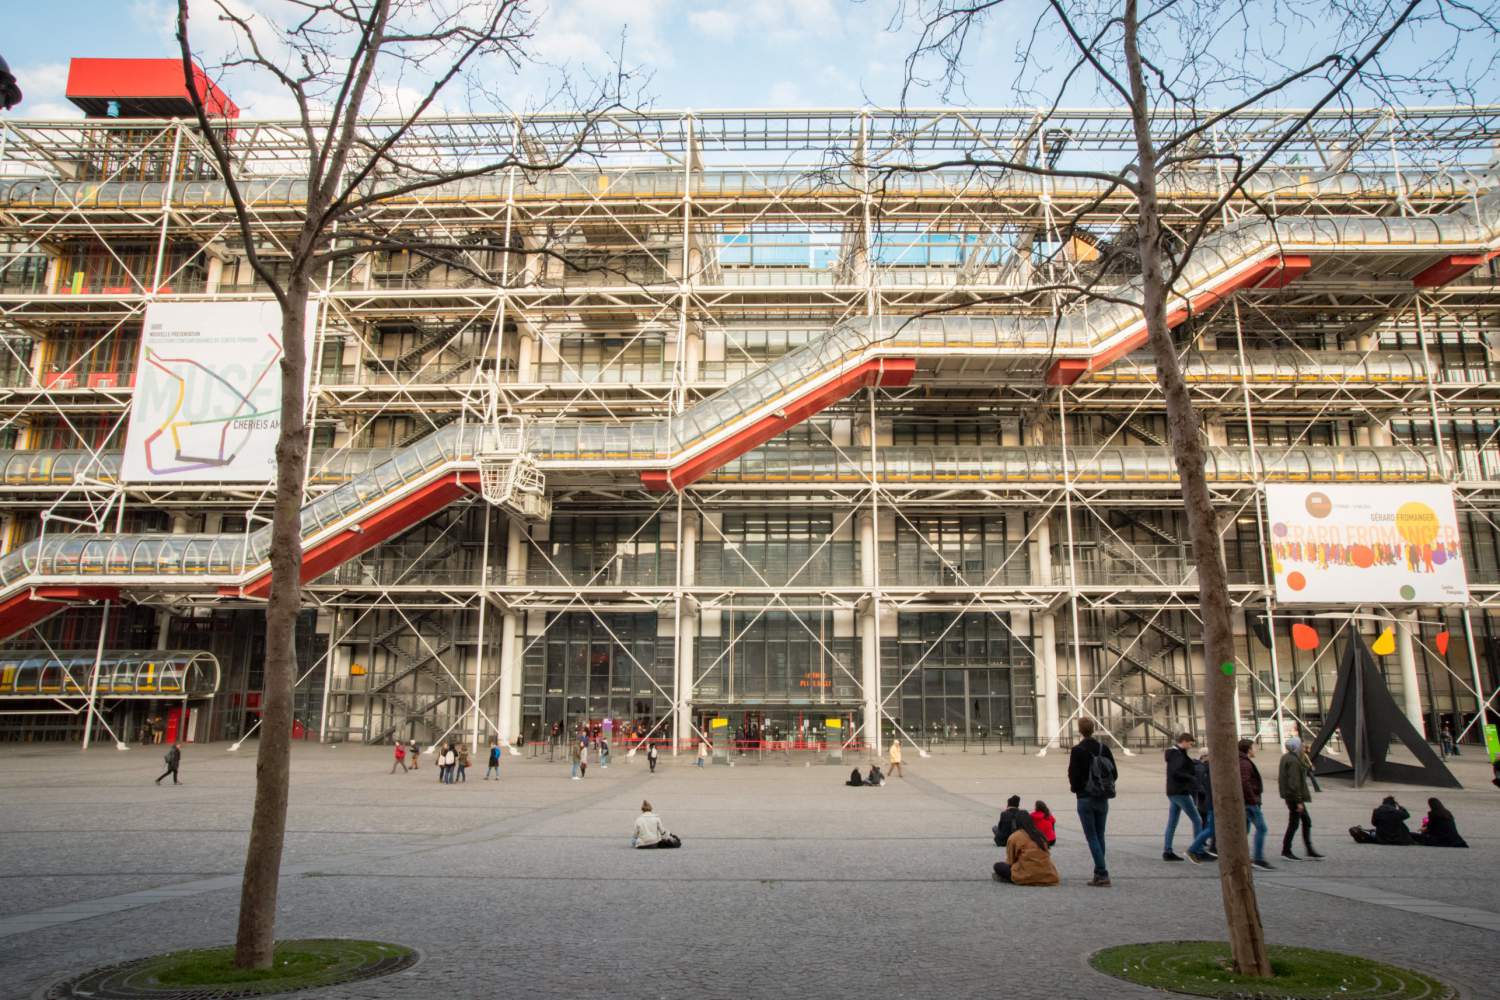 The Pompidou Centre in Paris